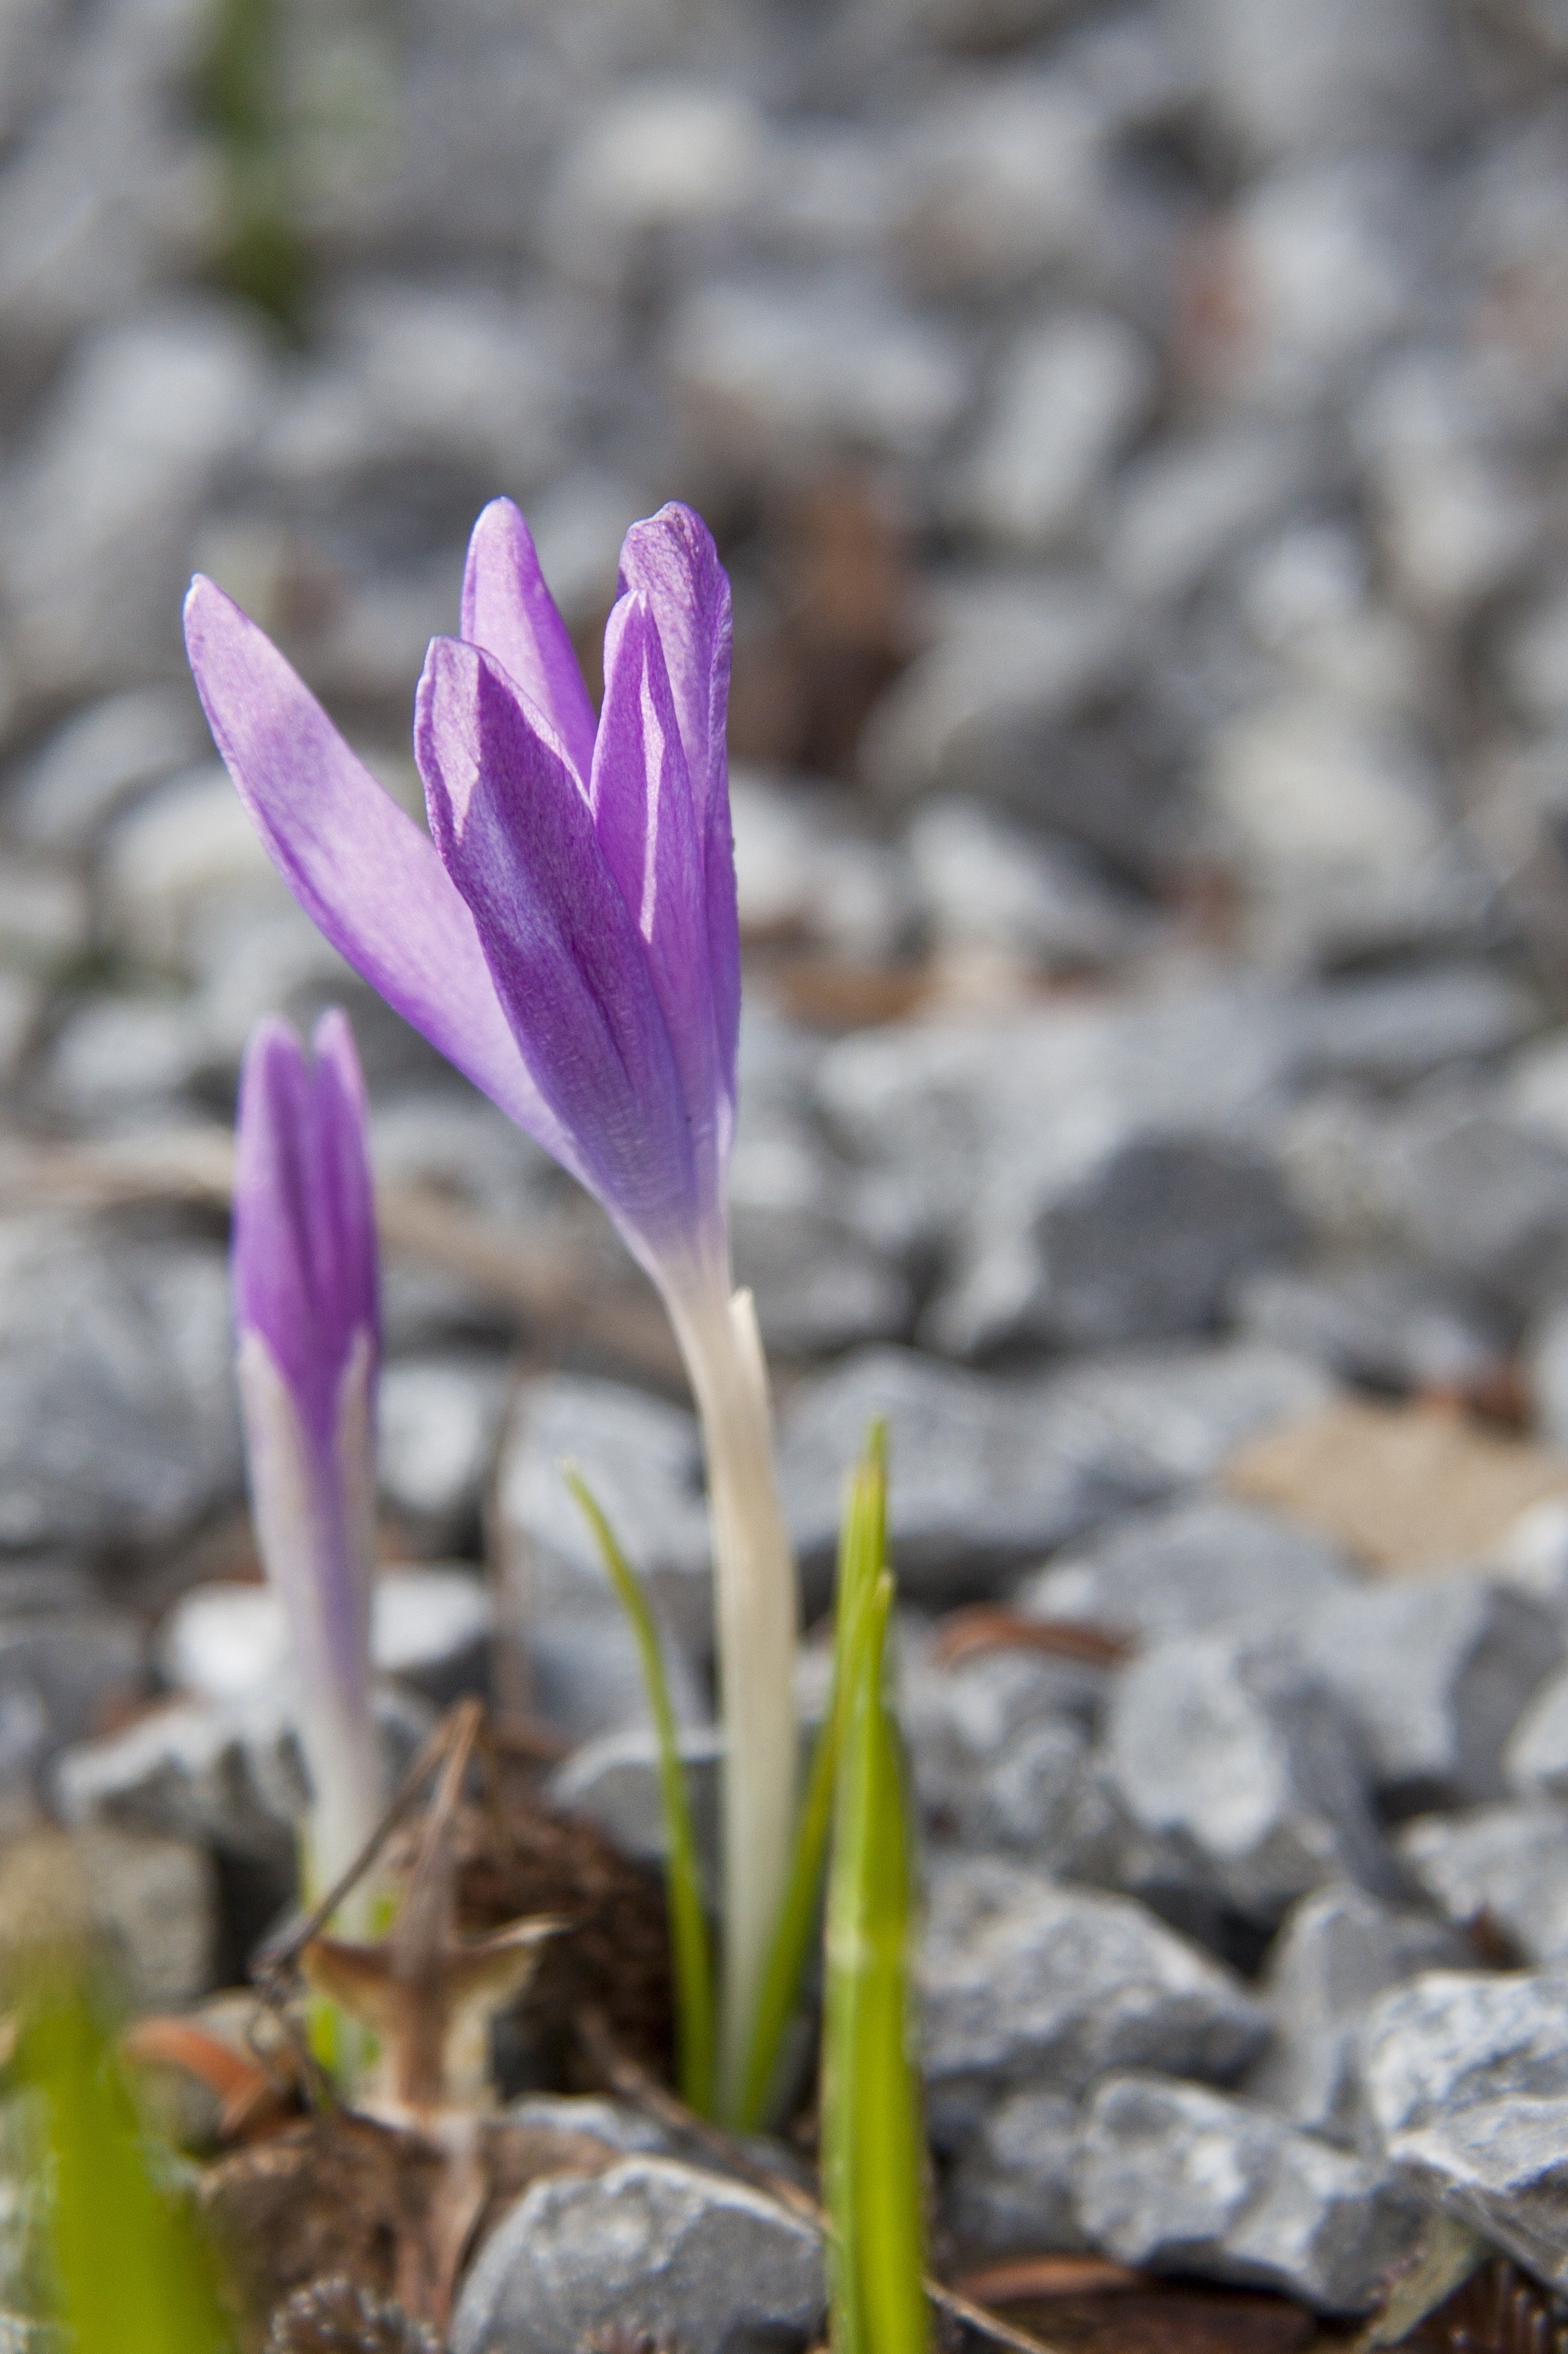 purple crocus flower